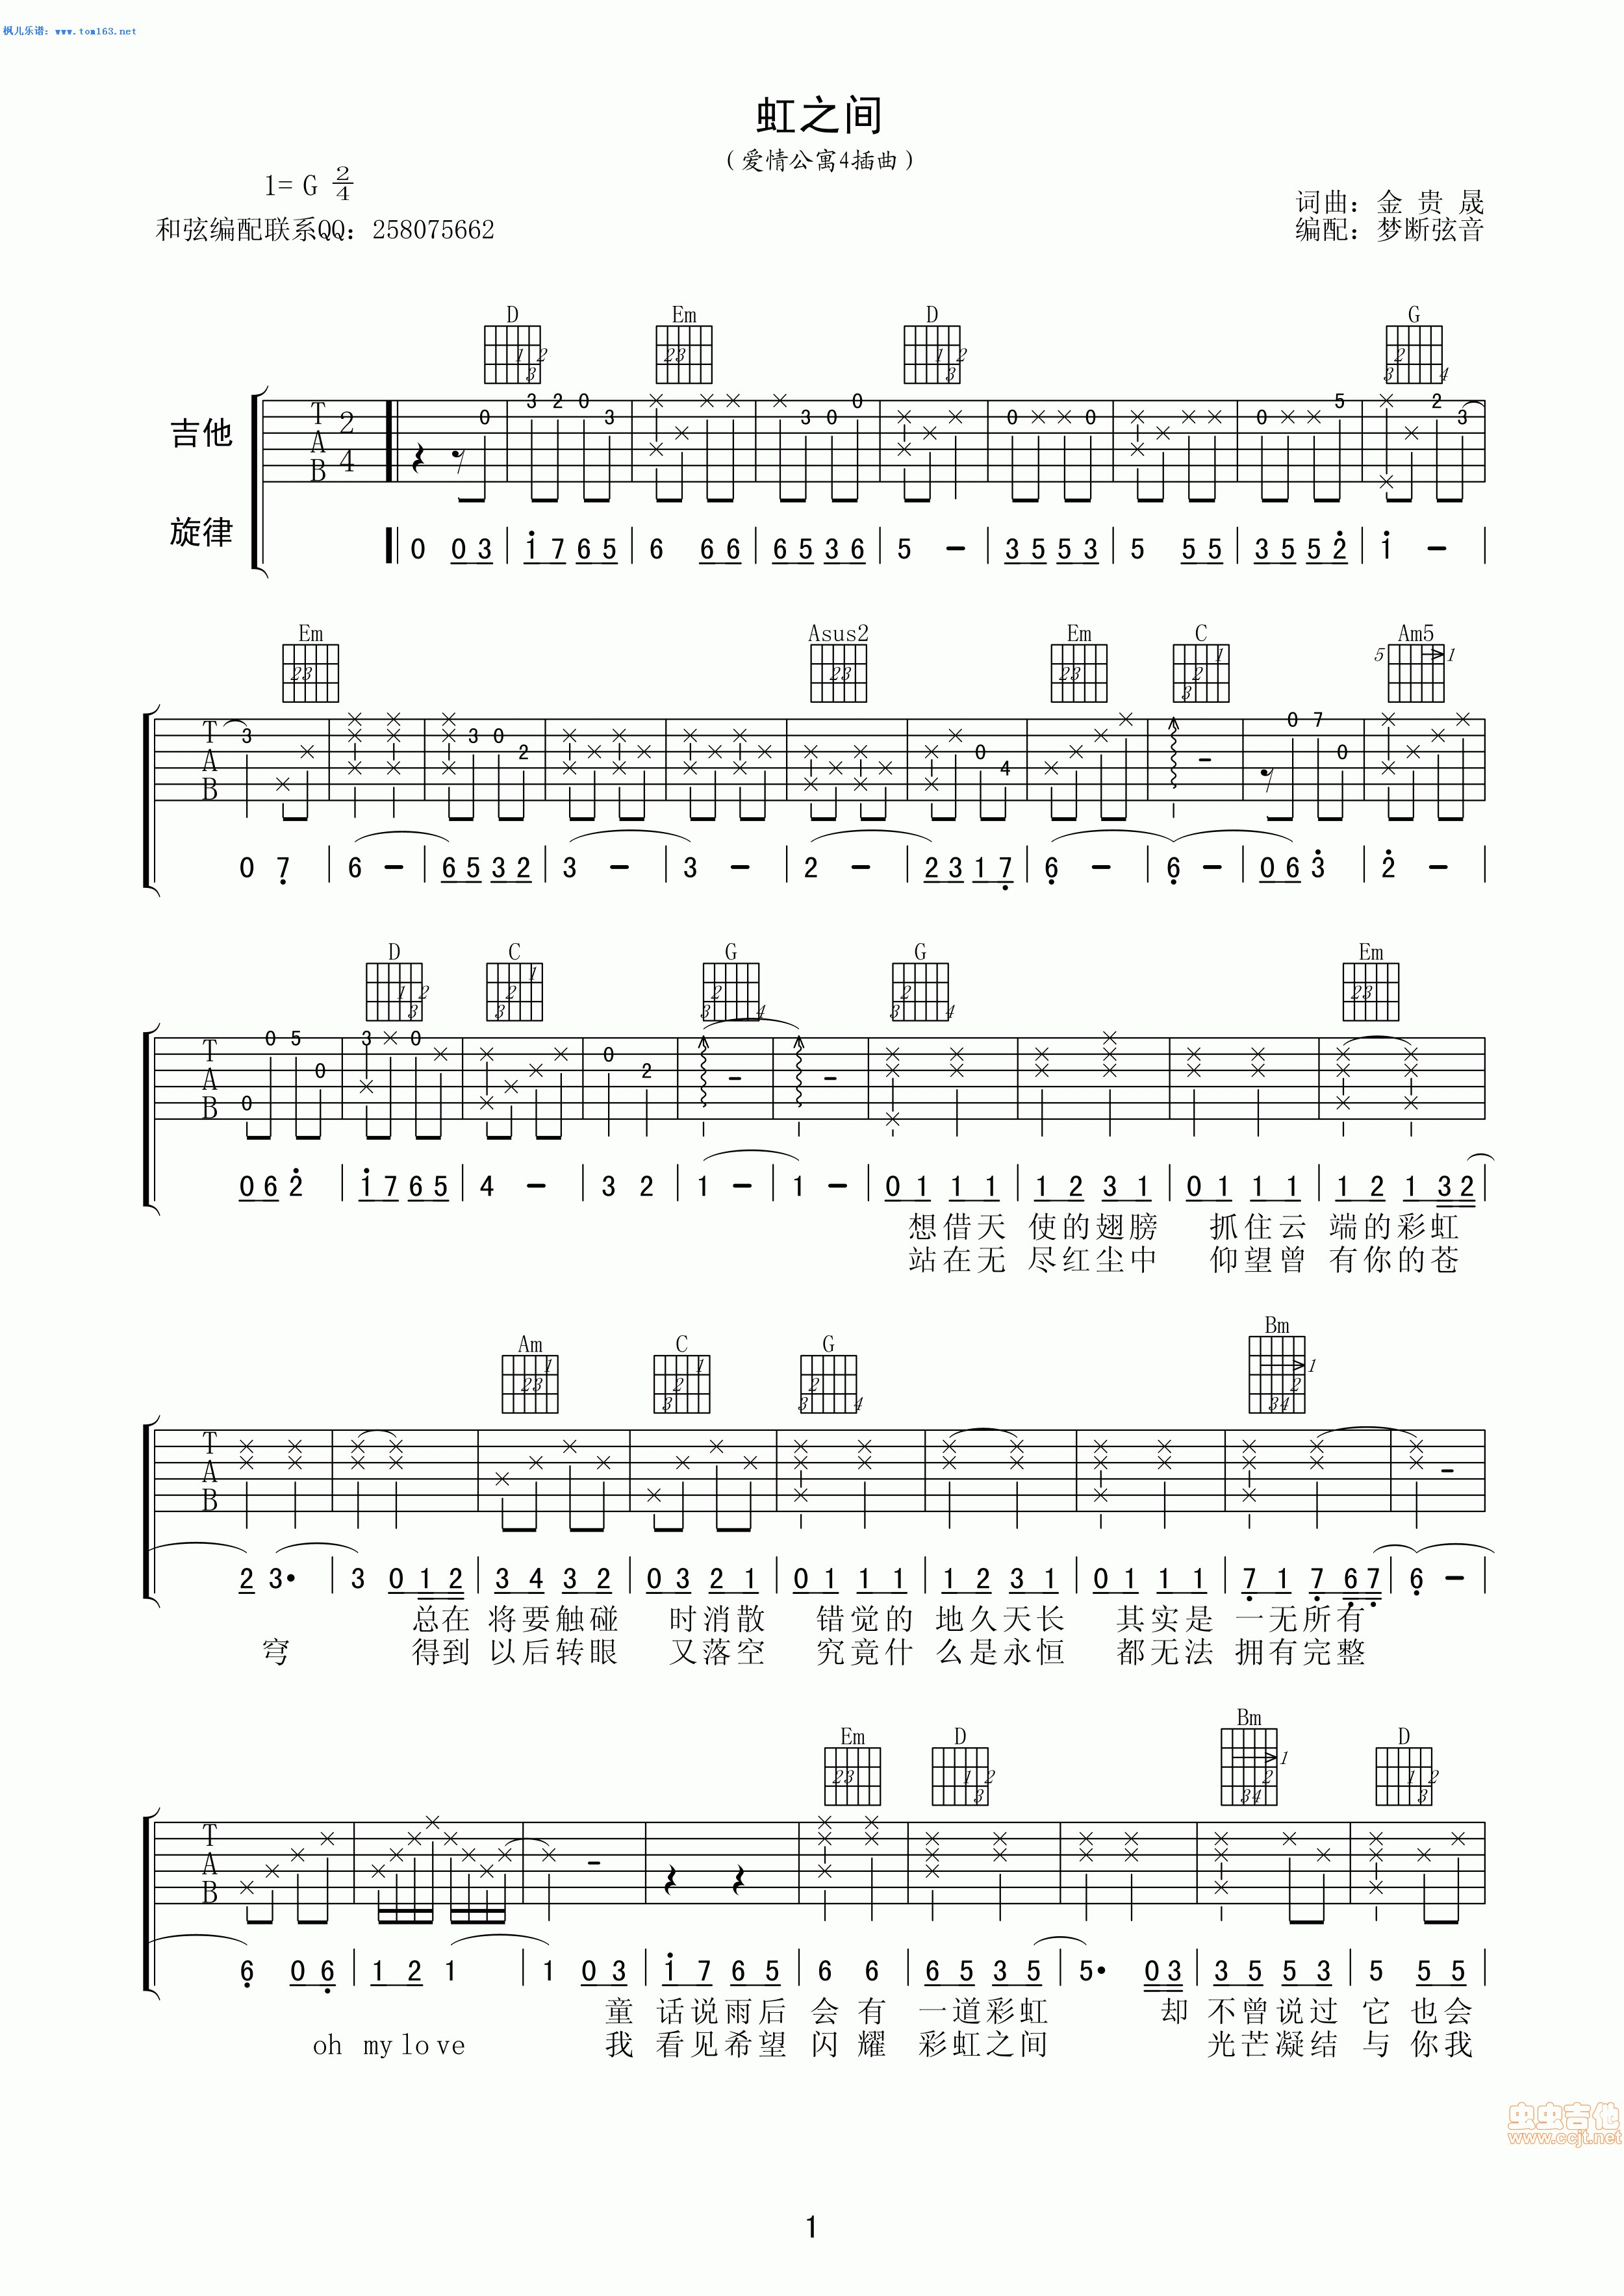 吉他谱 第511页 - 吉他谱大全，简单入门简谱全集，新手吉他曲谱视频教程